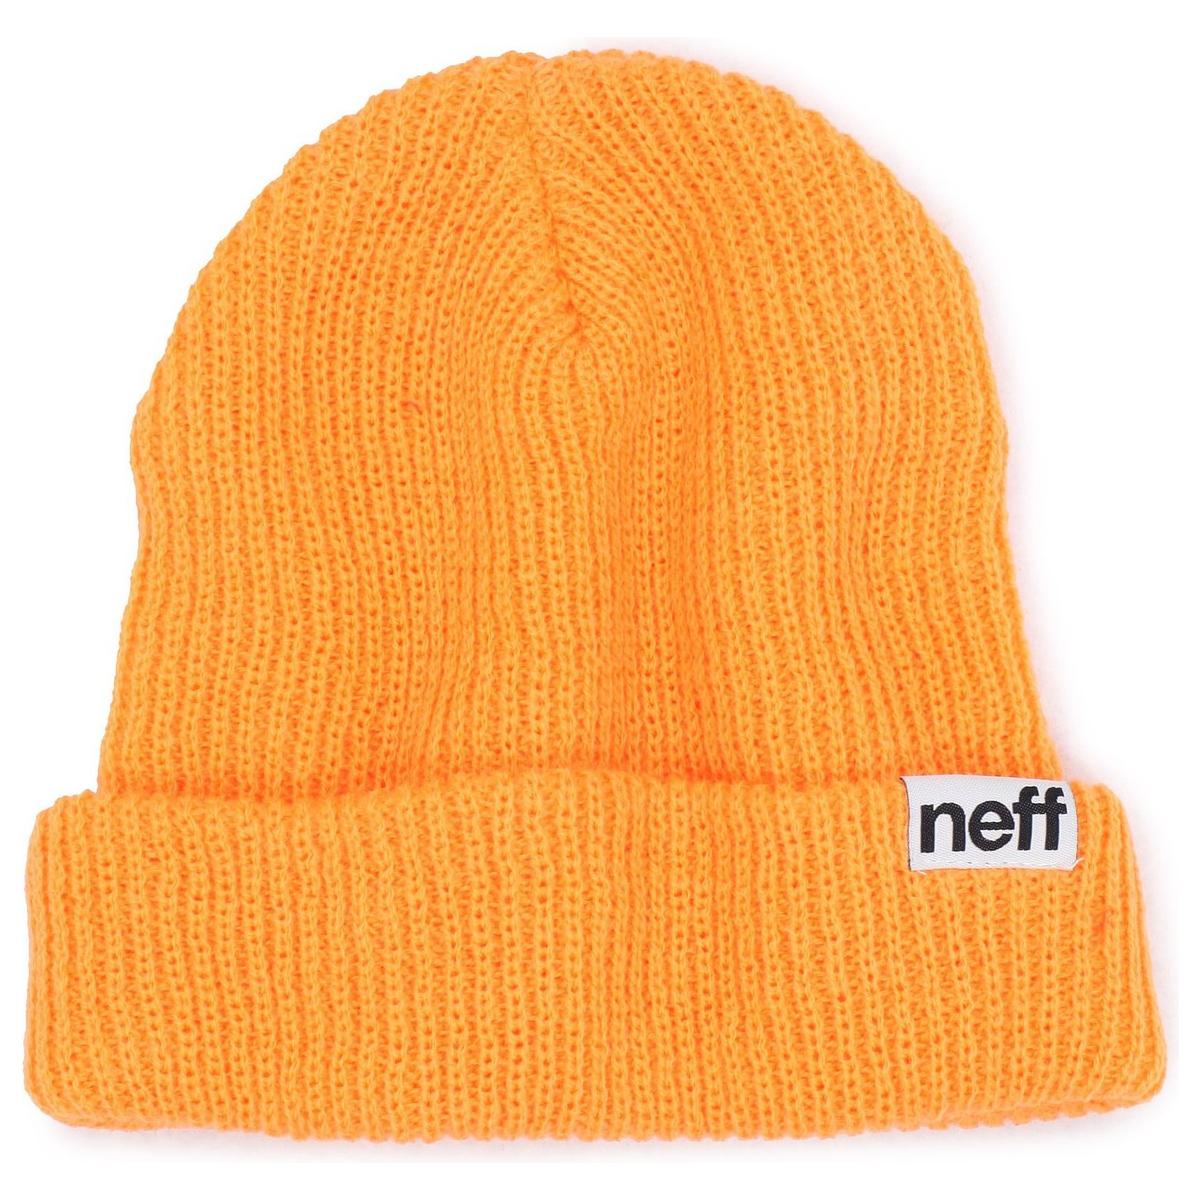 Neff Fold Beanie (Closeout)